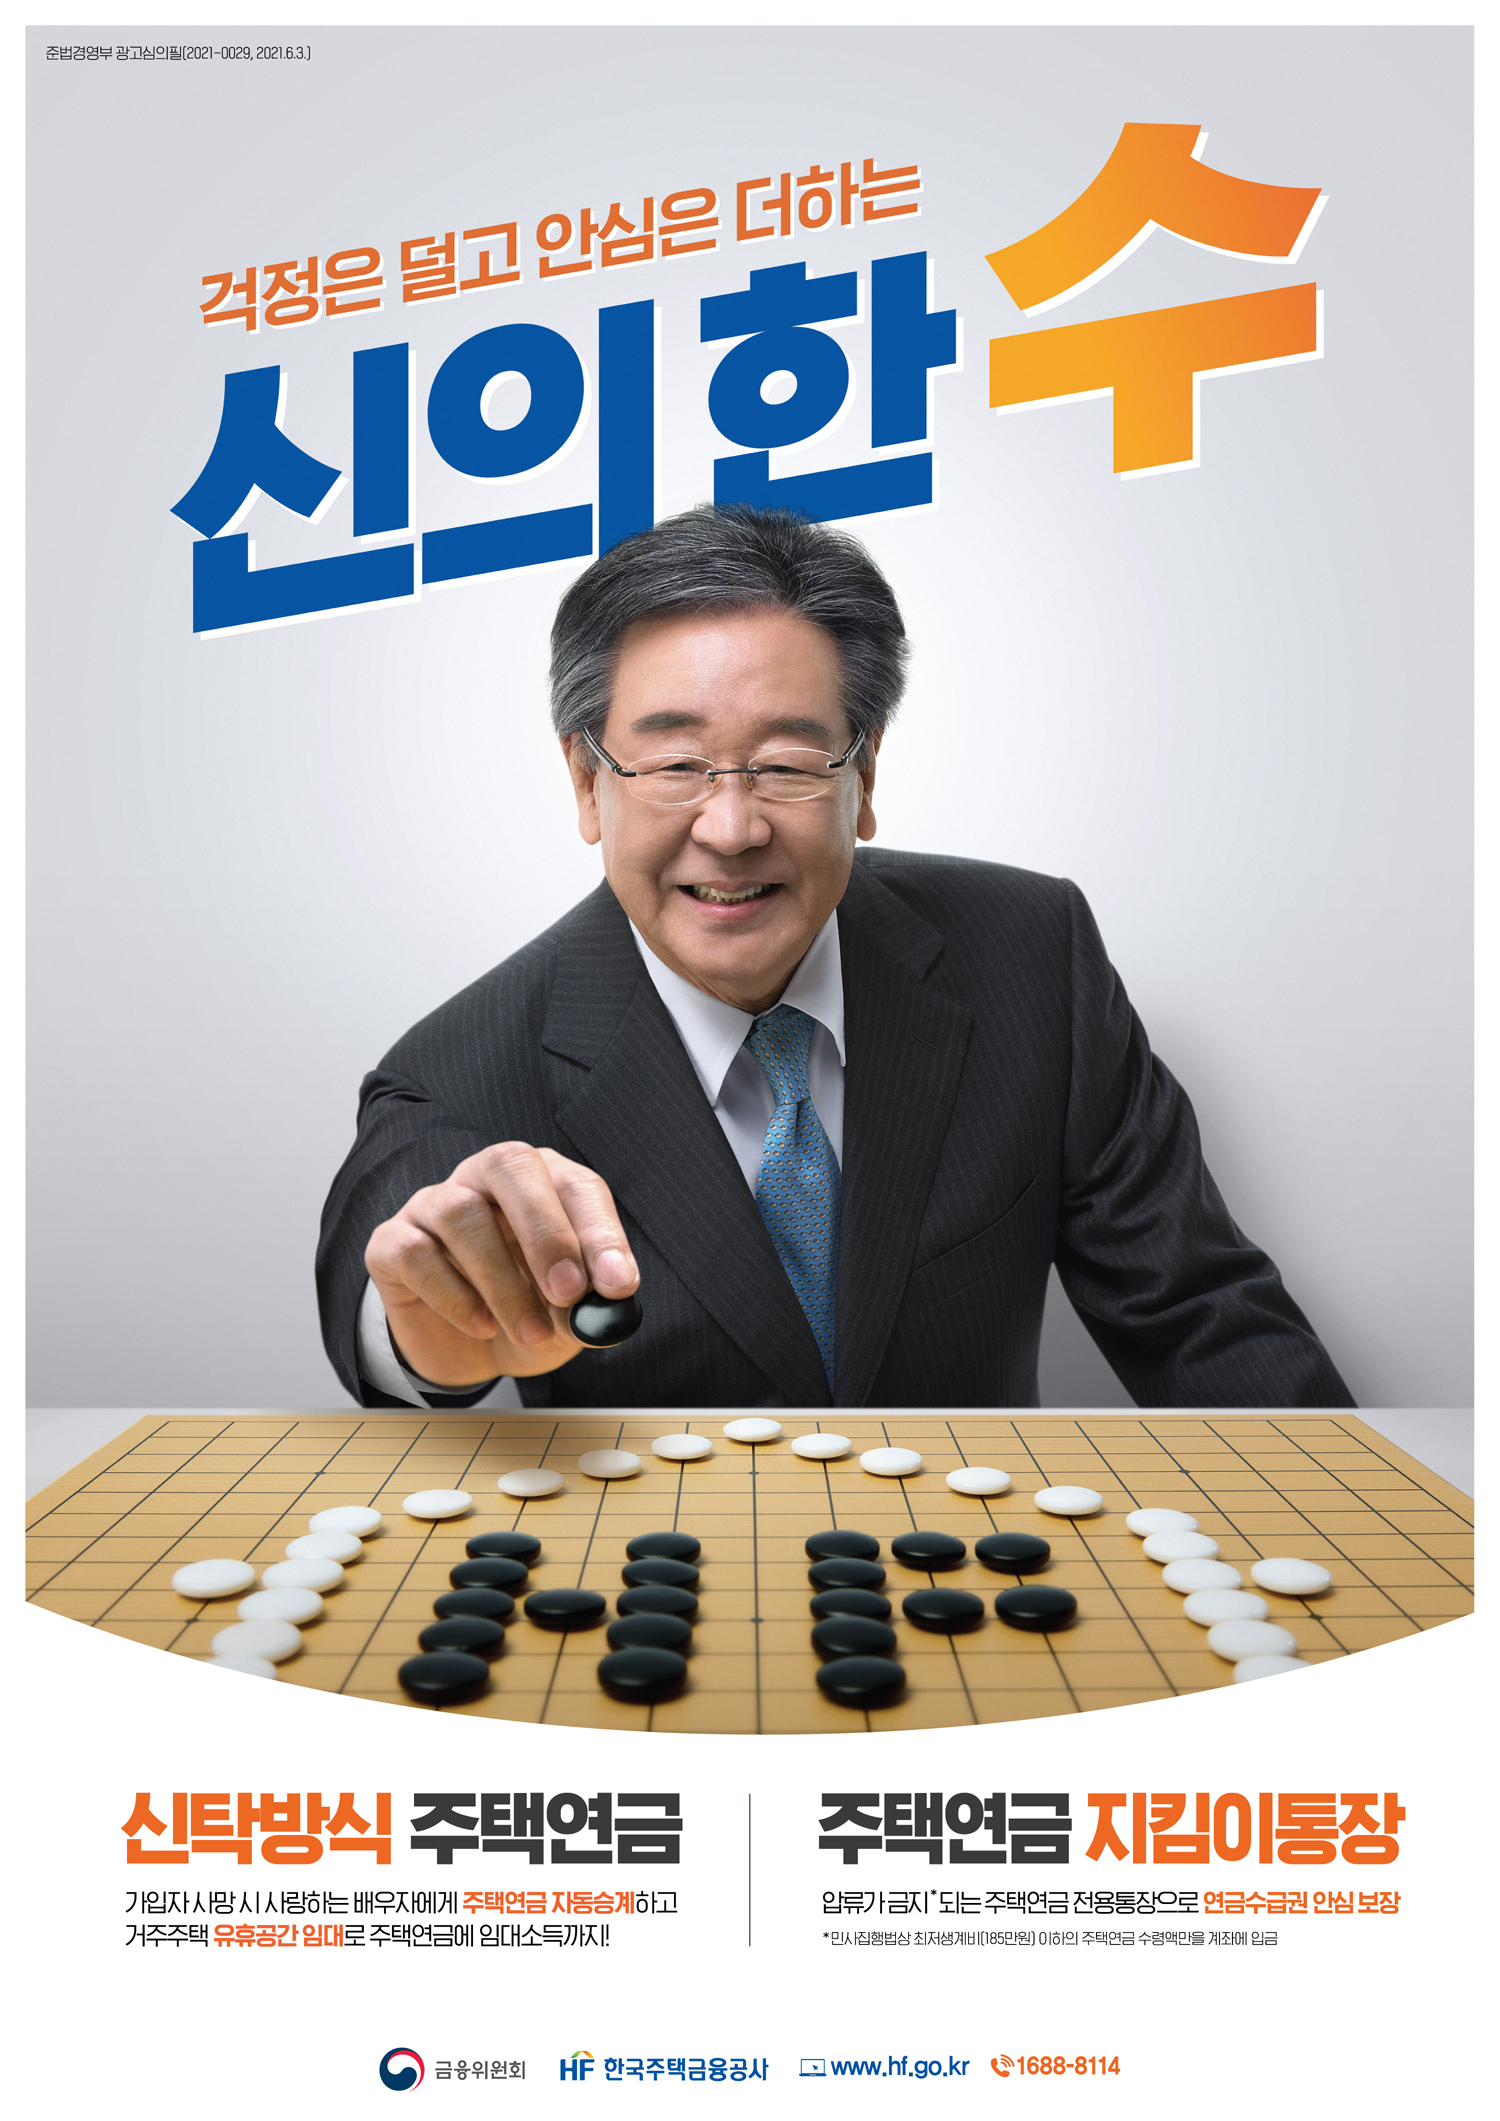 한국주택금융공사 홍보 이미지 4